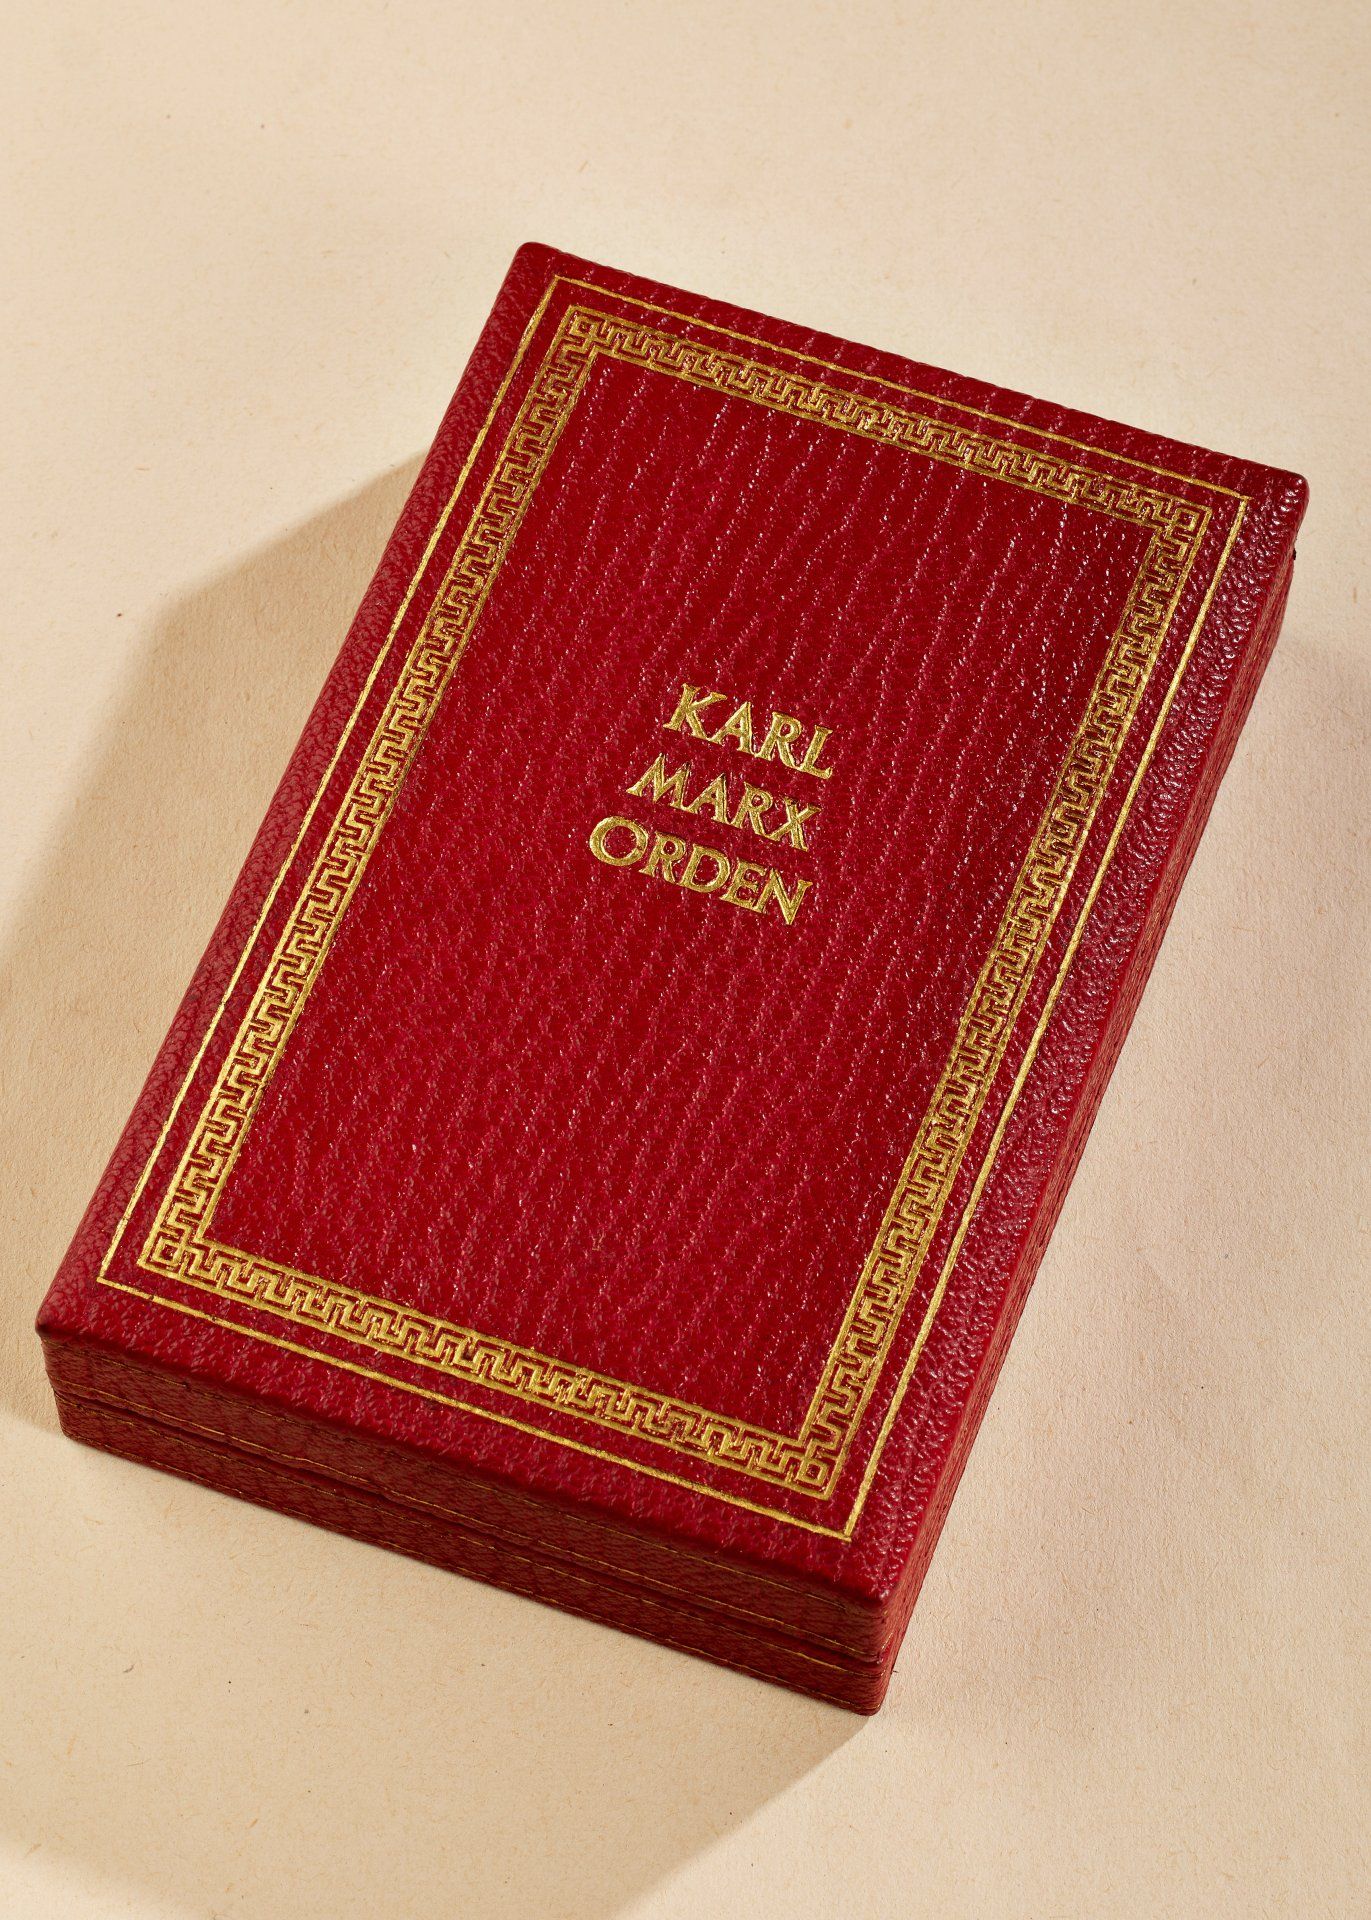 DDR - Deutsche Demokratische Republik : DDR: Karl Marx Orden Nr. 27 mit nummerngleichem Trägerau... - Bild 4 aus 8